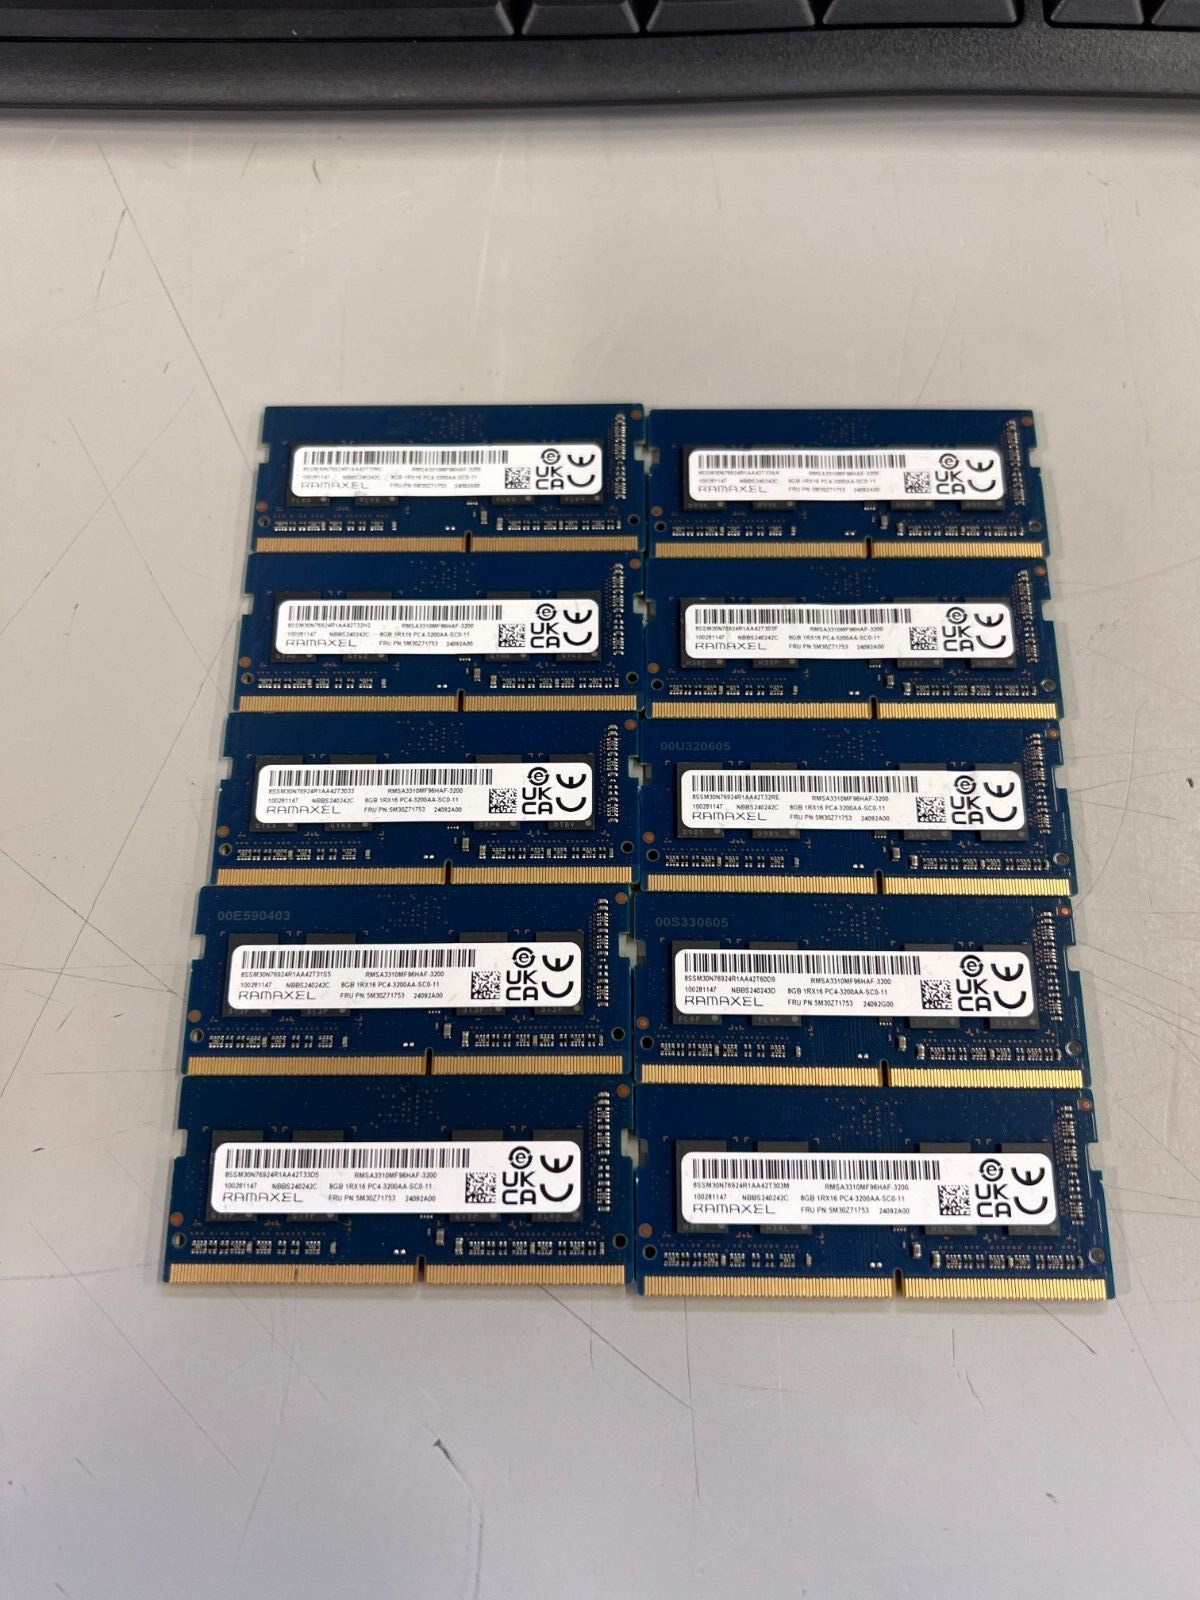 LOT OF 10-Ramaxel 8GB DDR4 3200MHz SODIMM Ram Memory RMSA3220MJ78HAF-3200